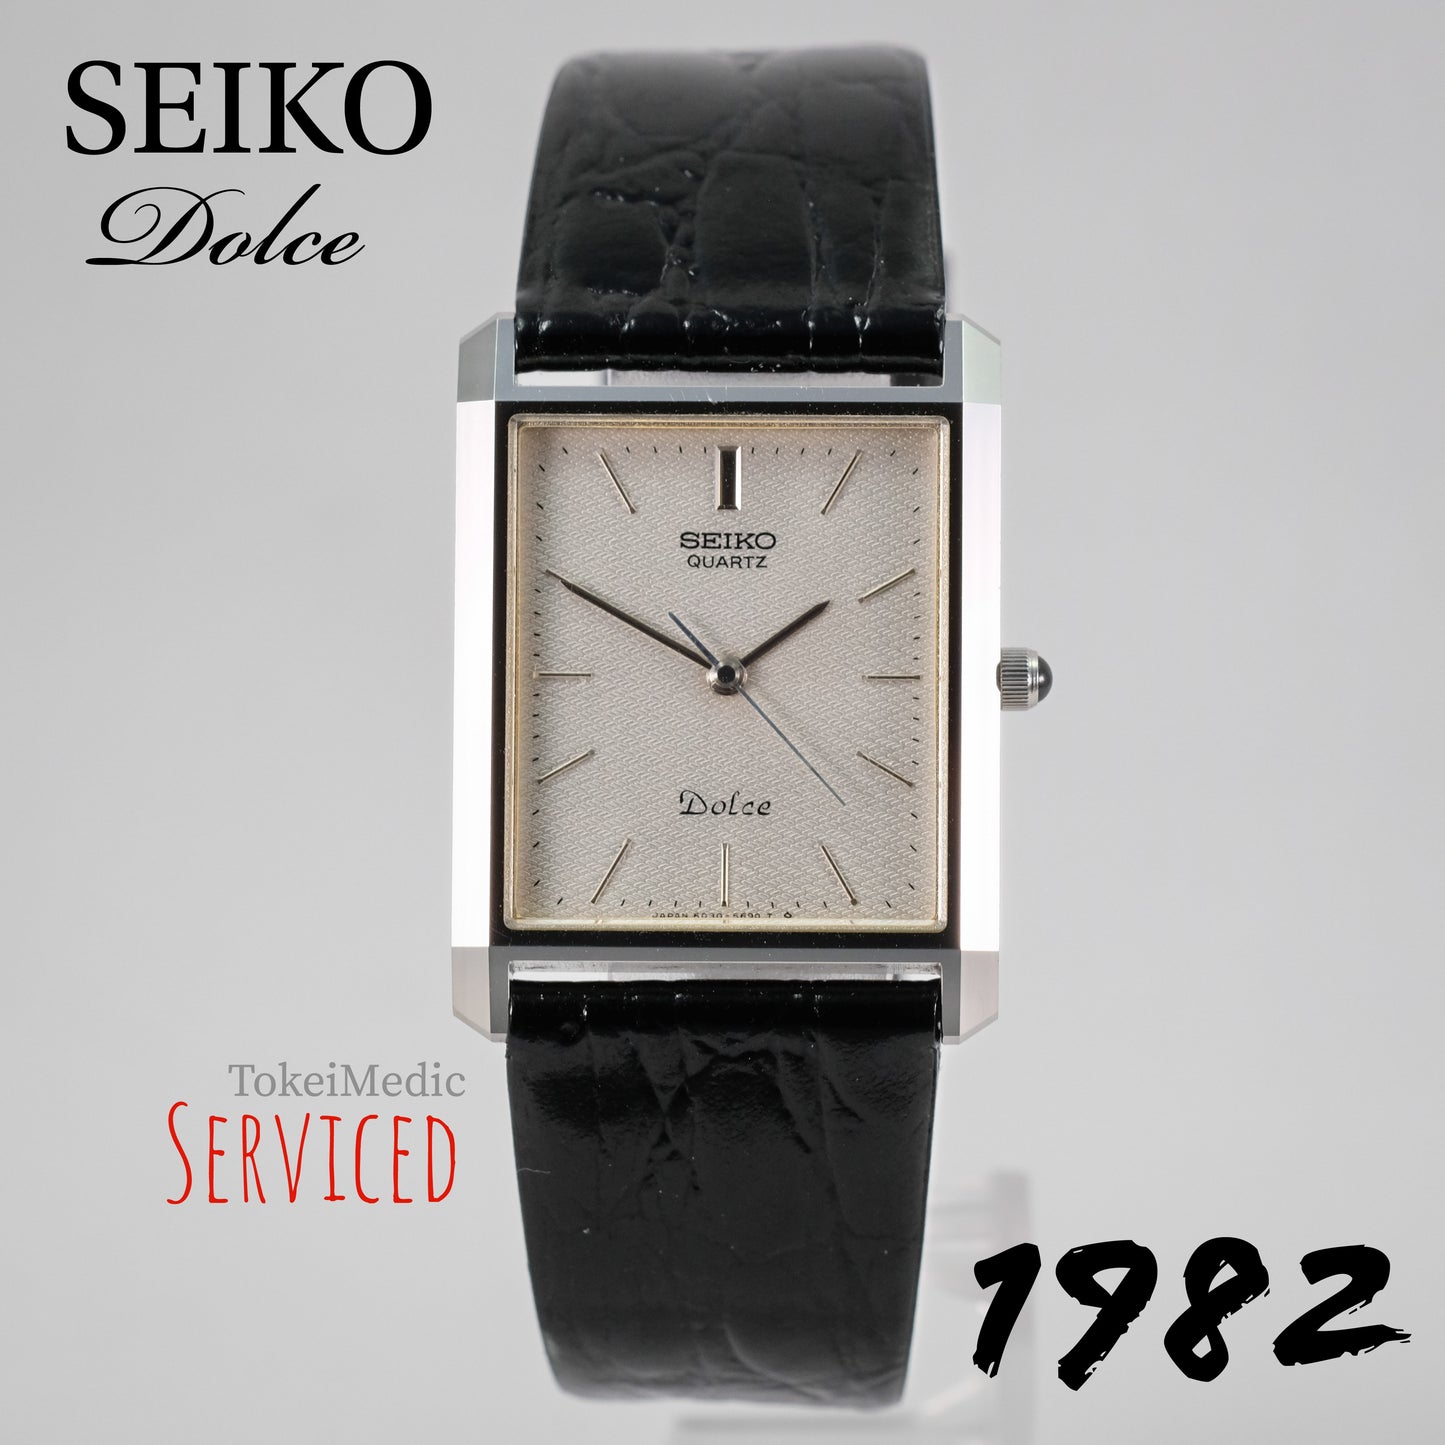 1982 Seiko Dolce 6030-5620